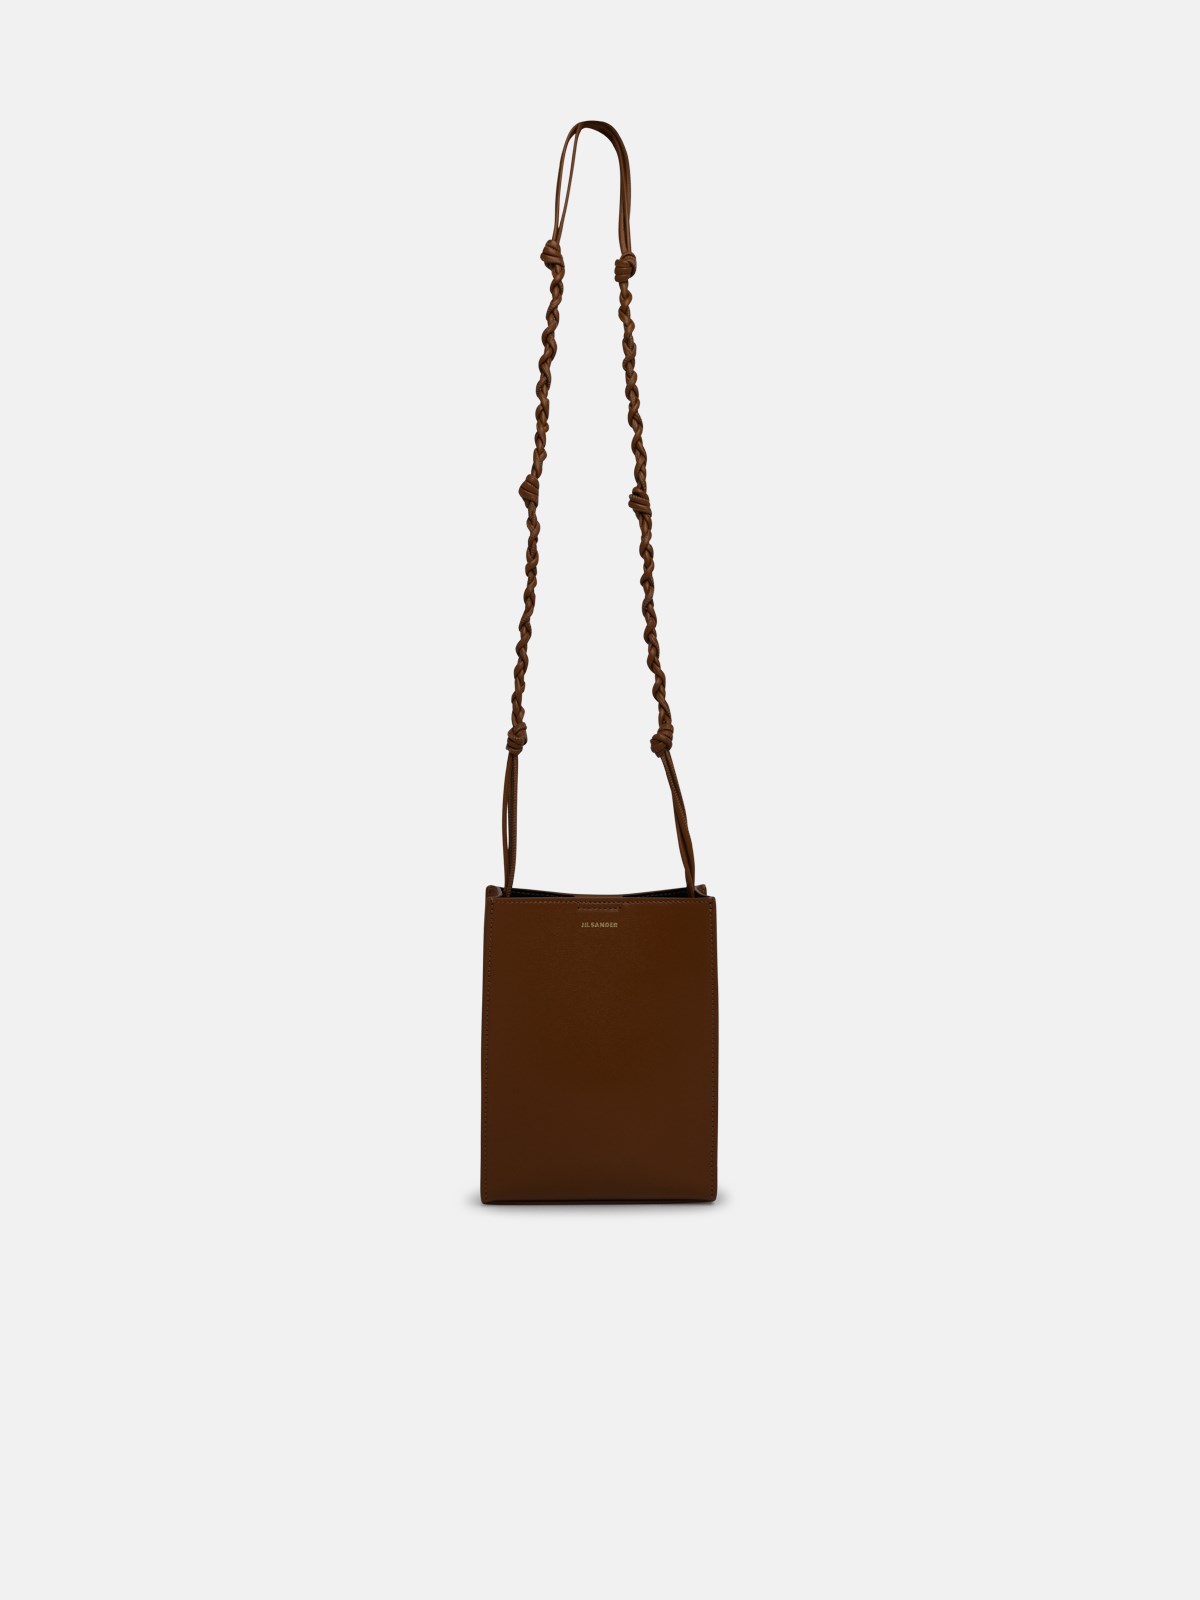 Jil Sander Brown Leather Small Tangle Crossbody Bag